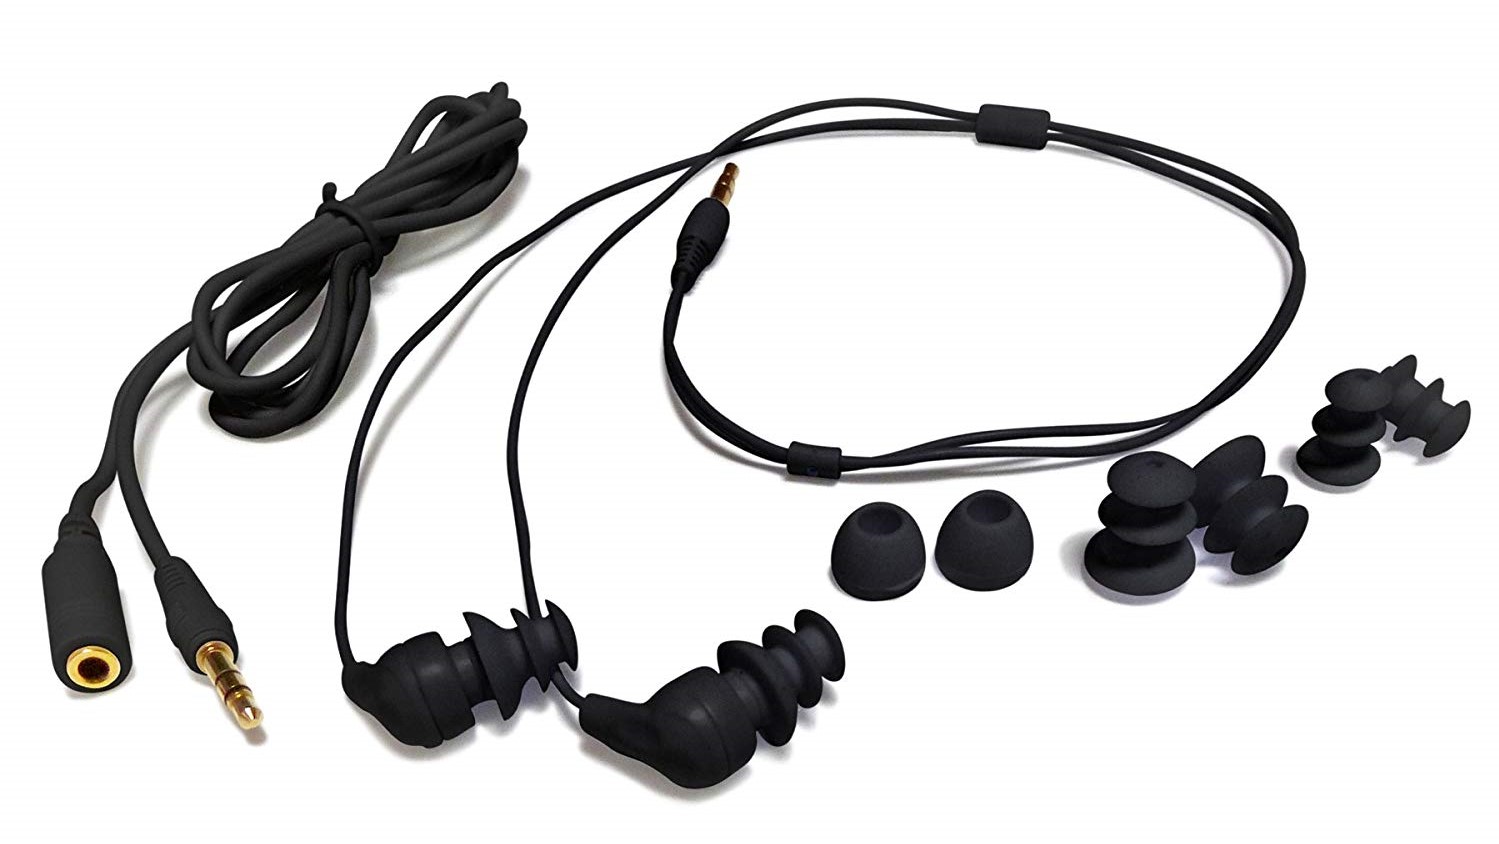 Best waterproof headphones: Swimbuds